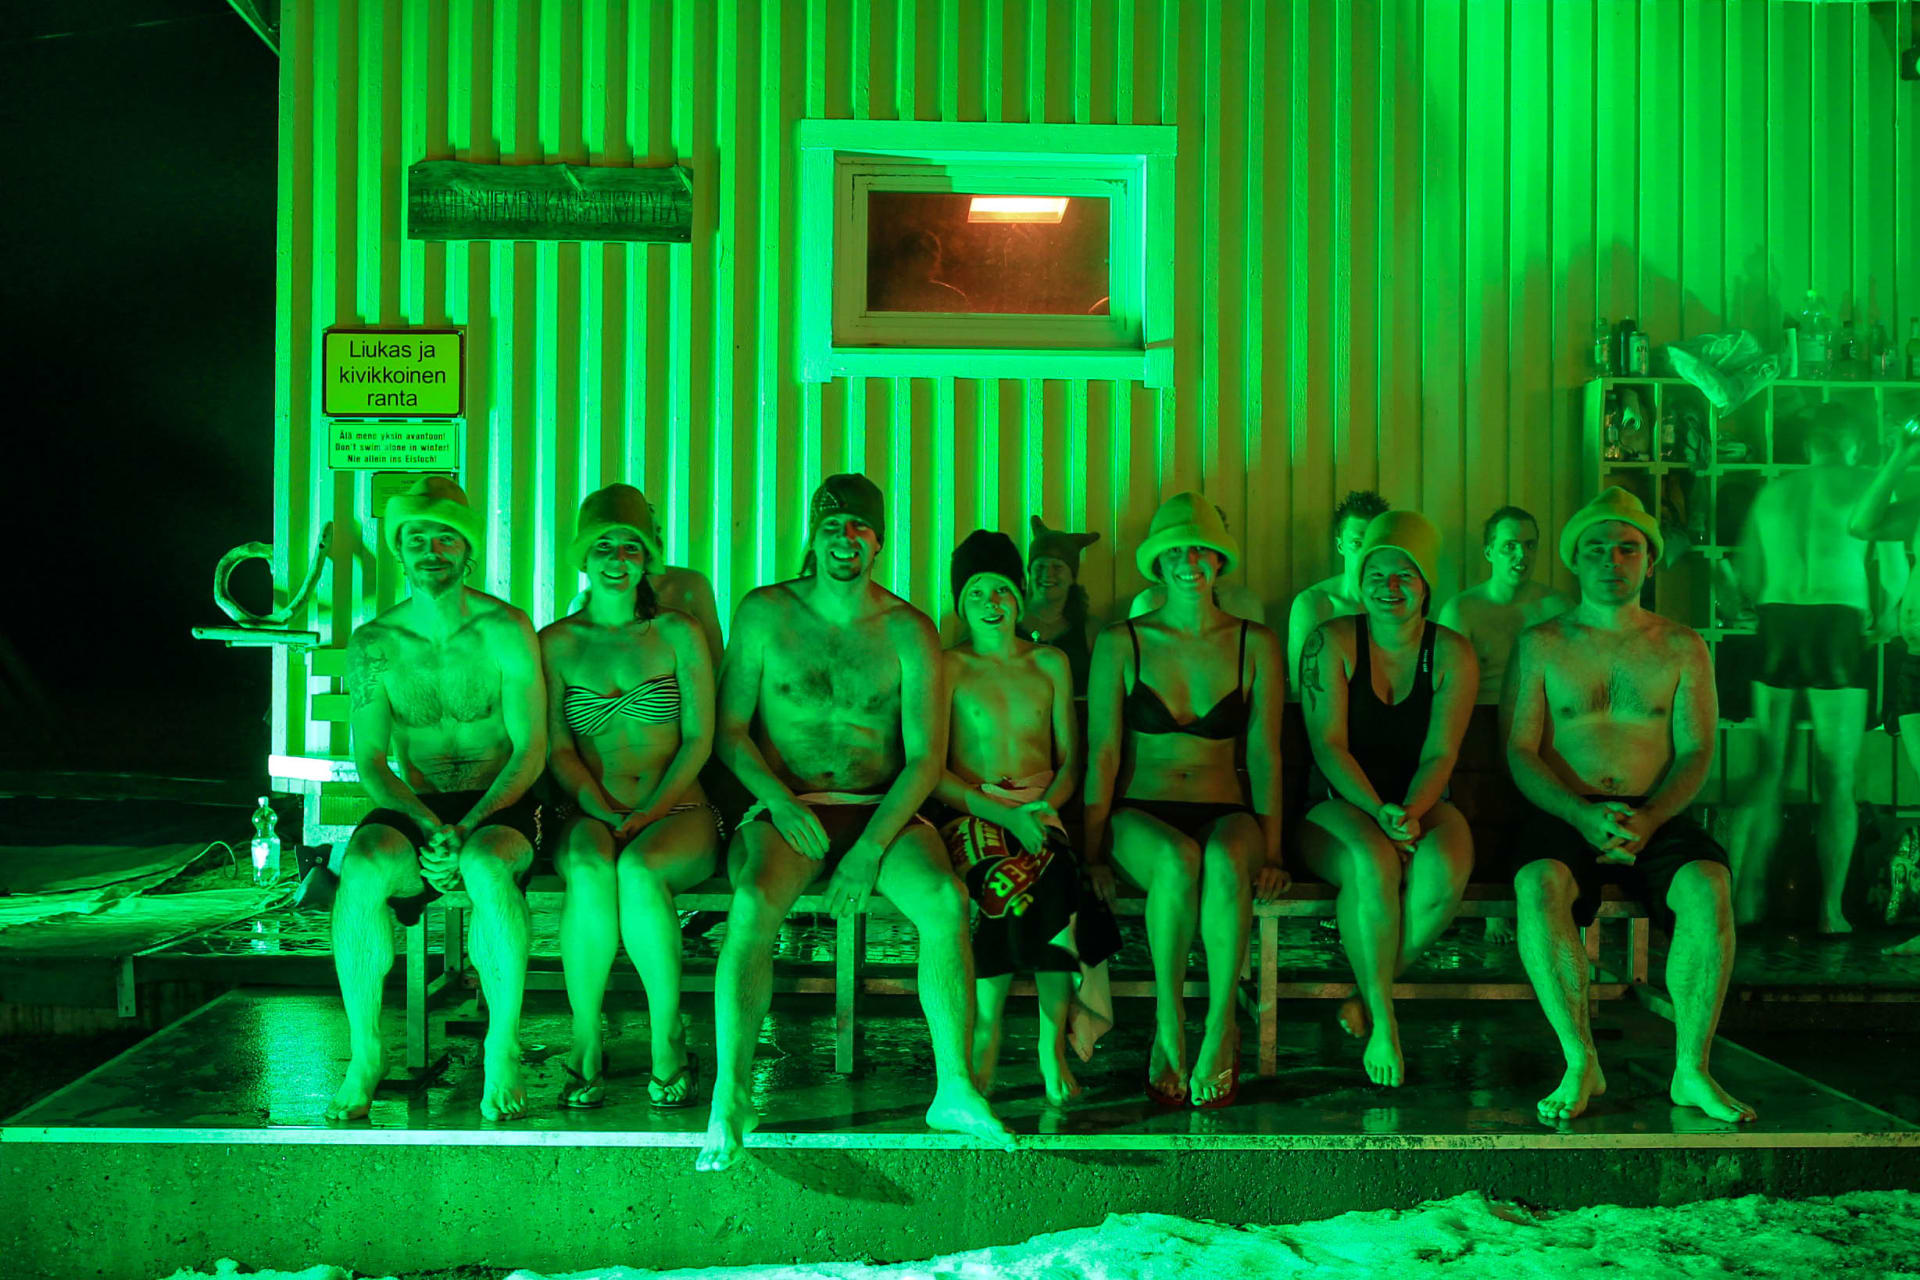 Saunojat vilvoittelevat ulkona tunnelmallisessa, vihreässä valossa kylki-kyljessä.